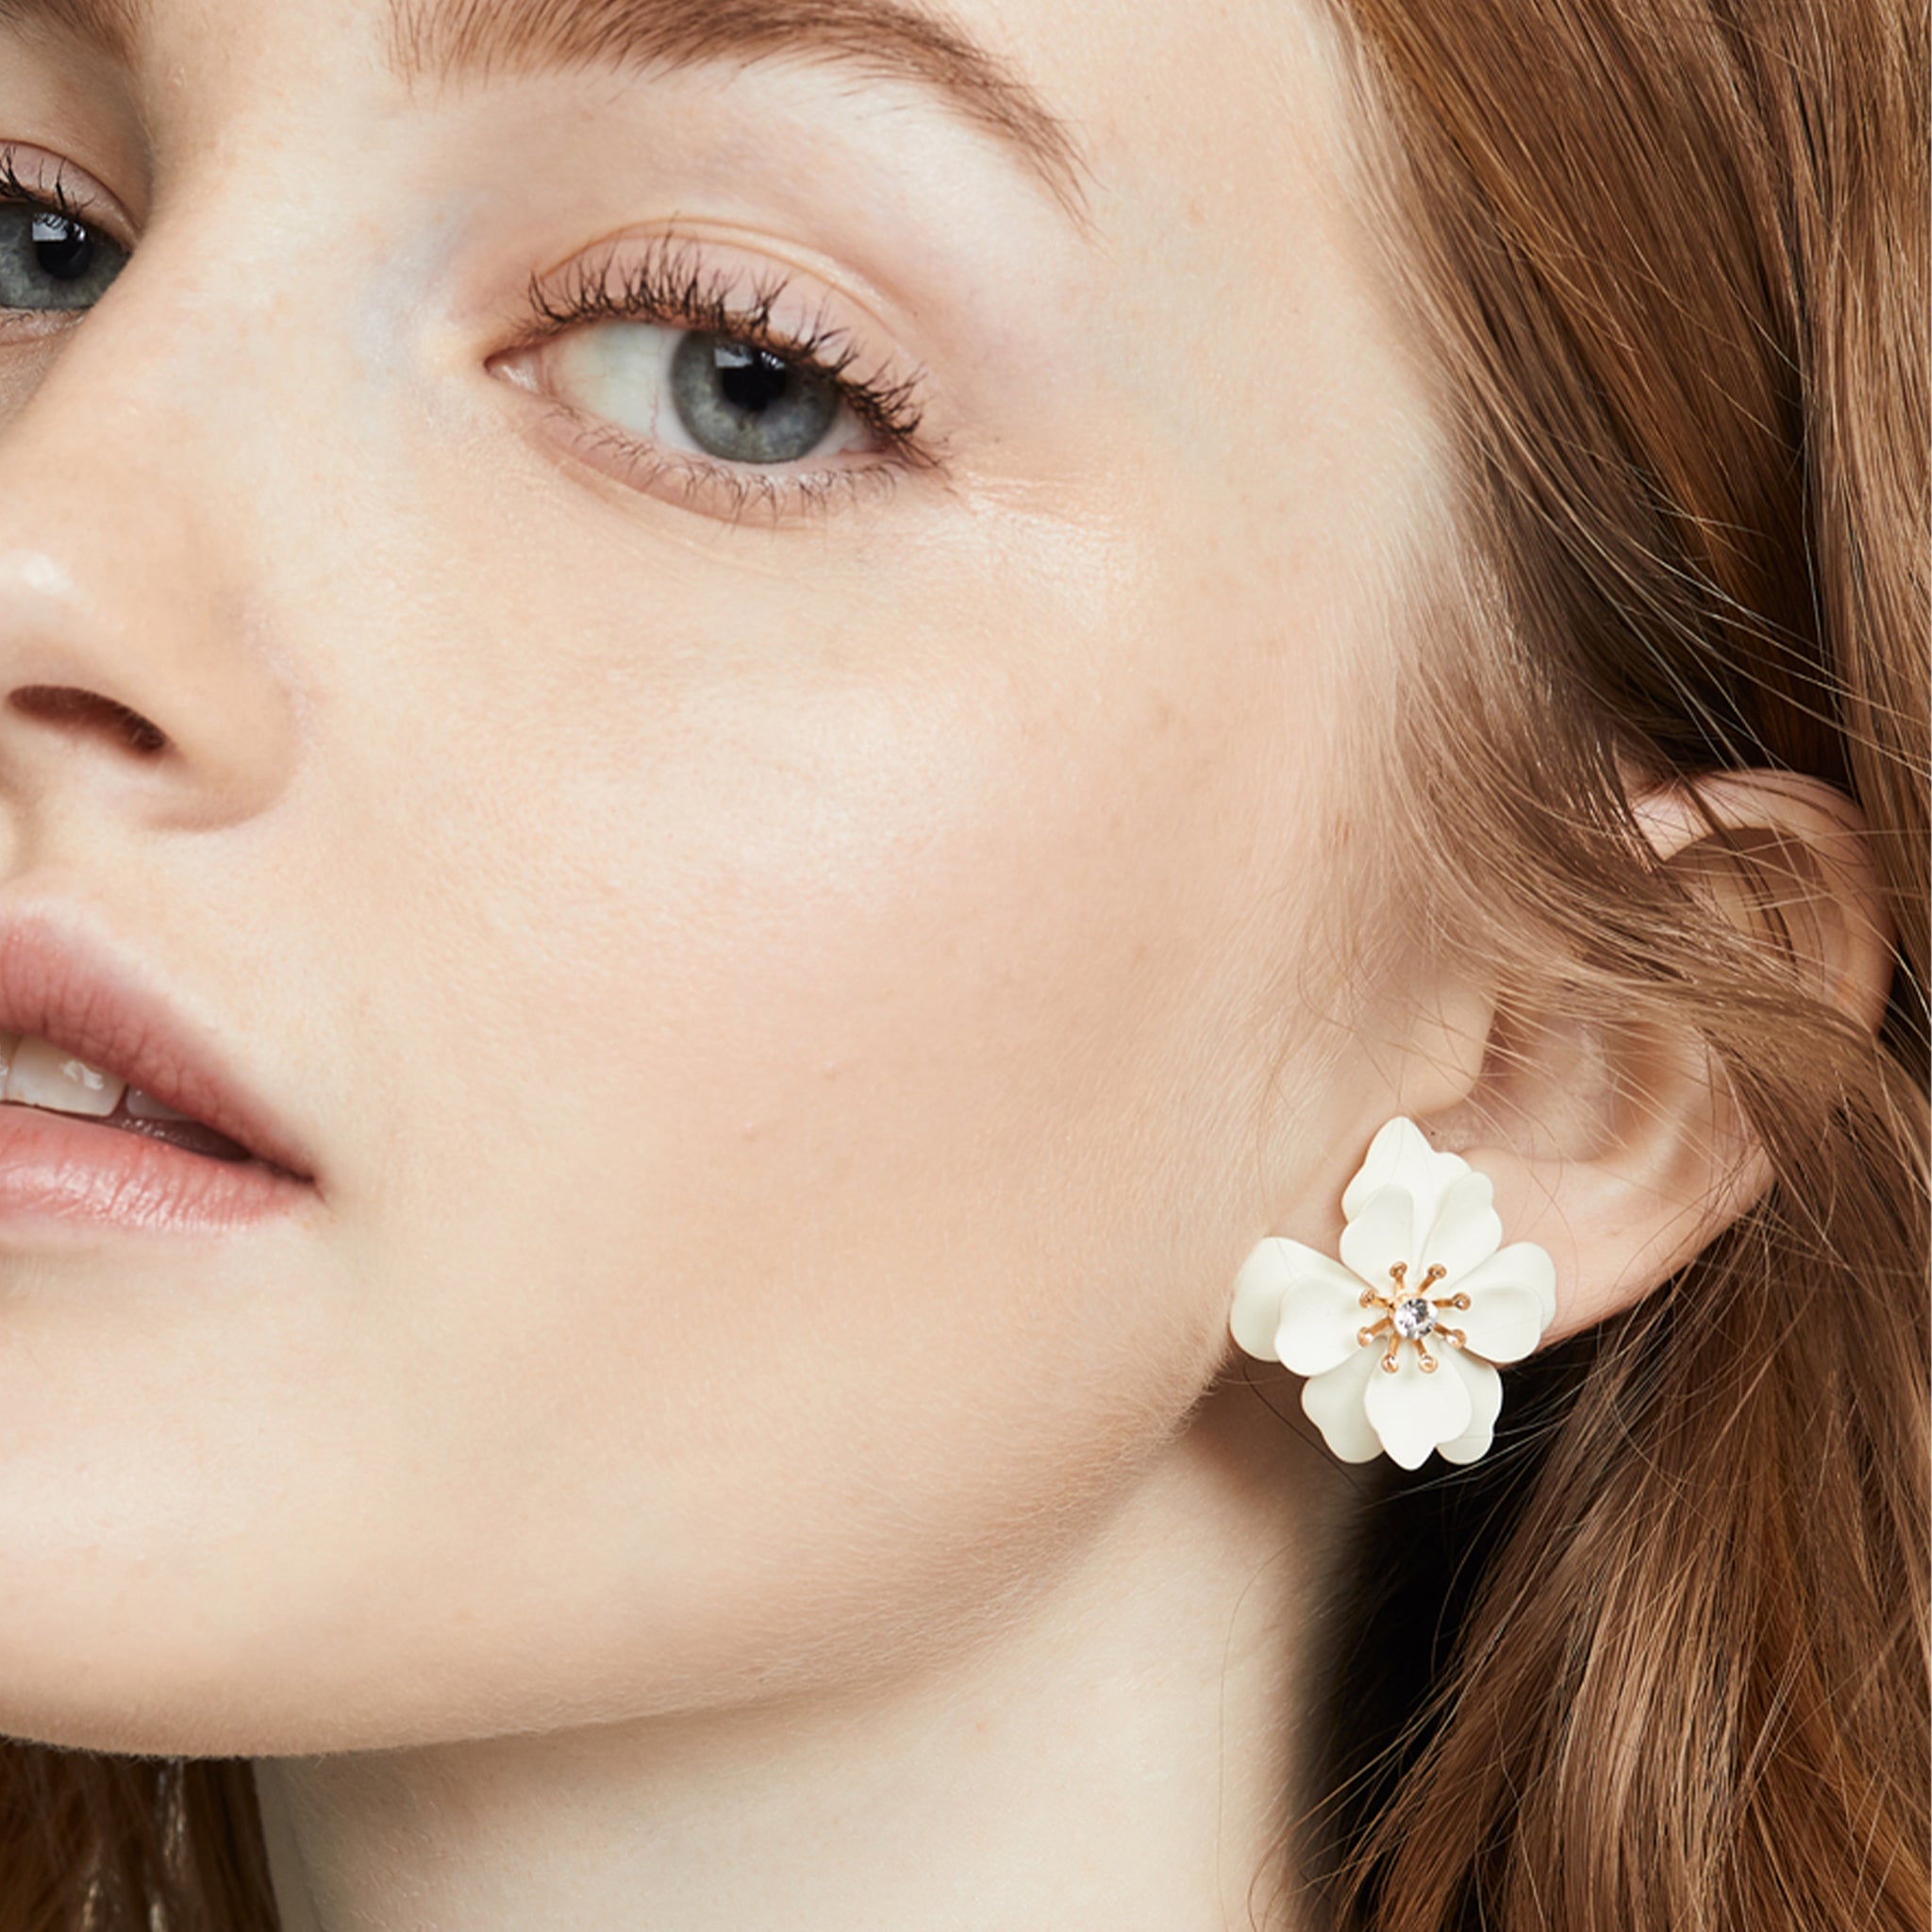 Blooming earrings